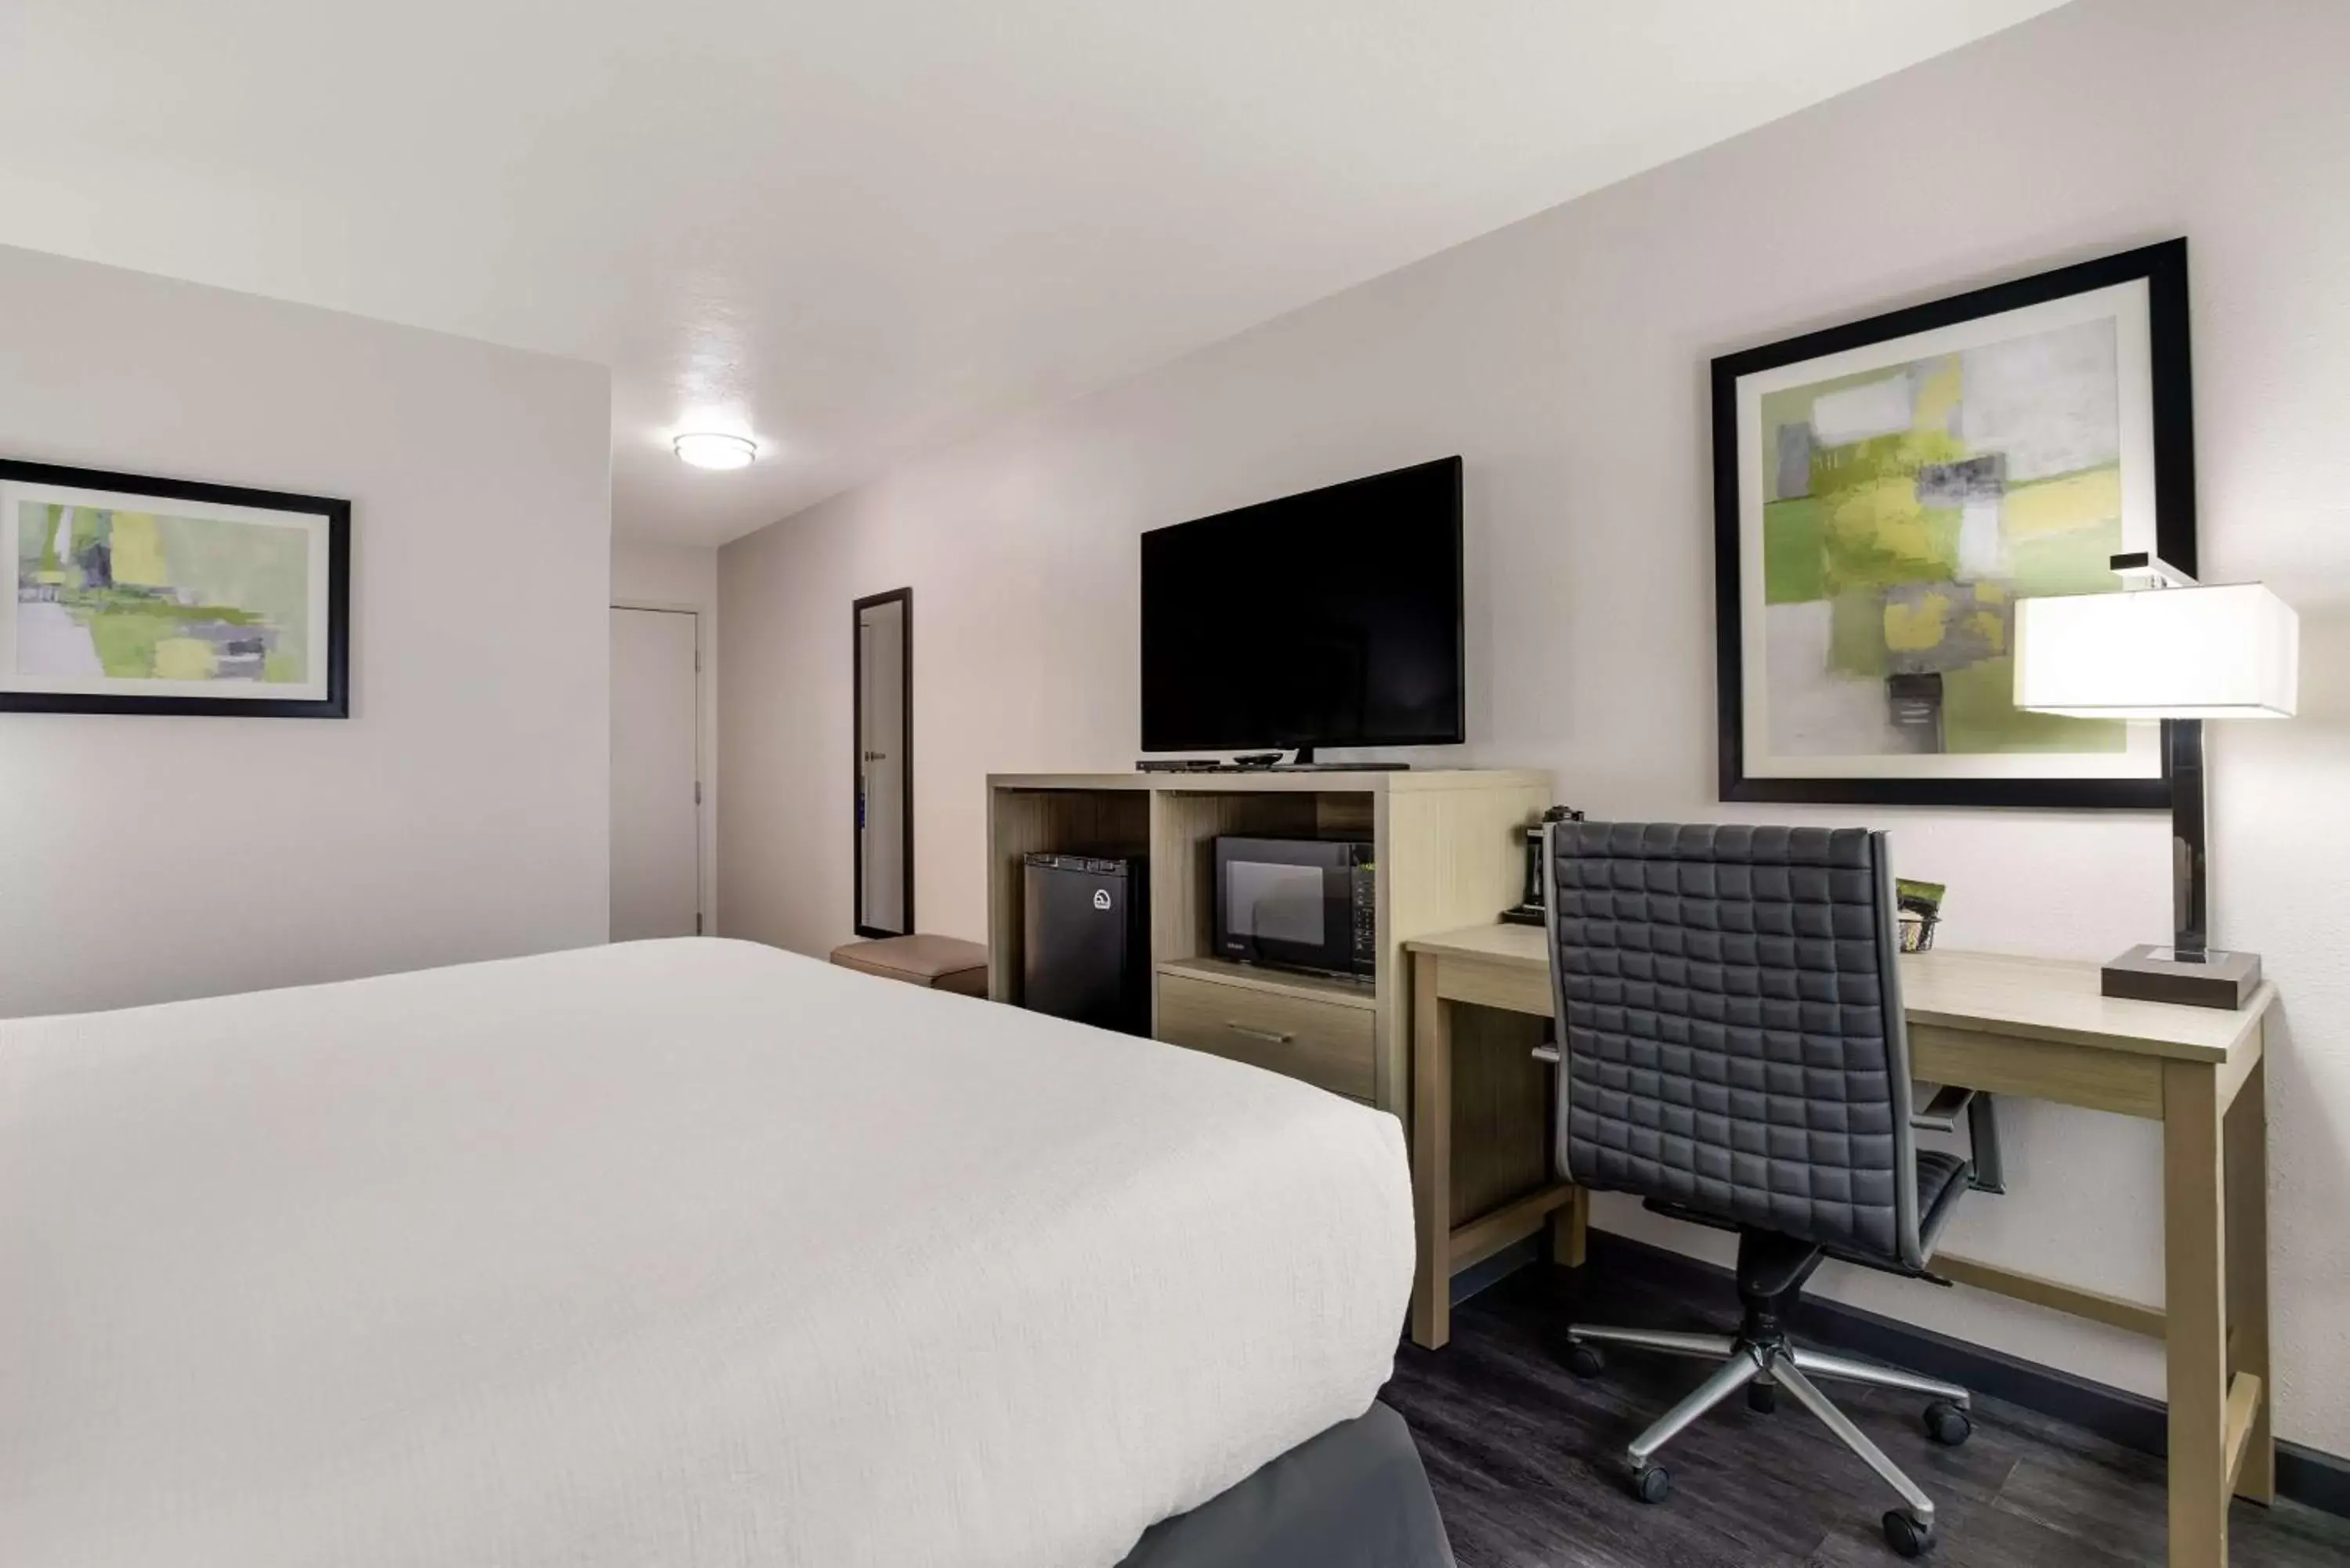 Bedroom, TV/Entertainment Center in Best Western Grants Inn